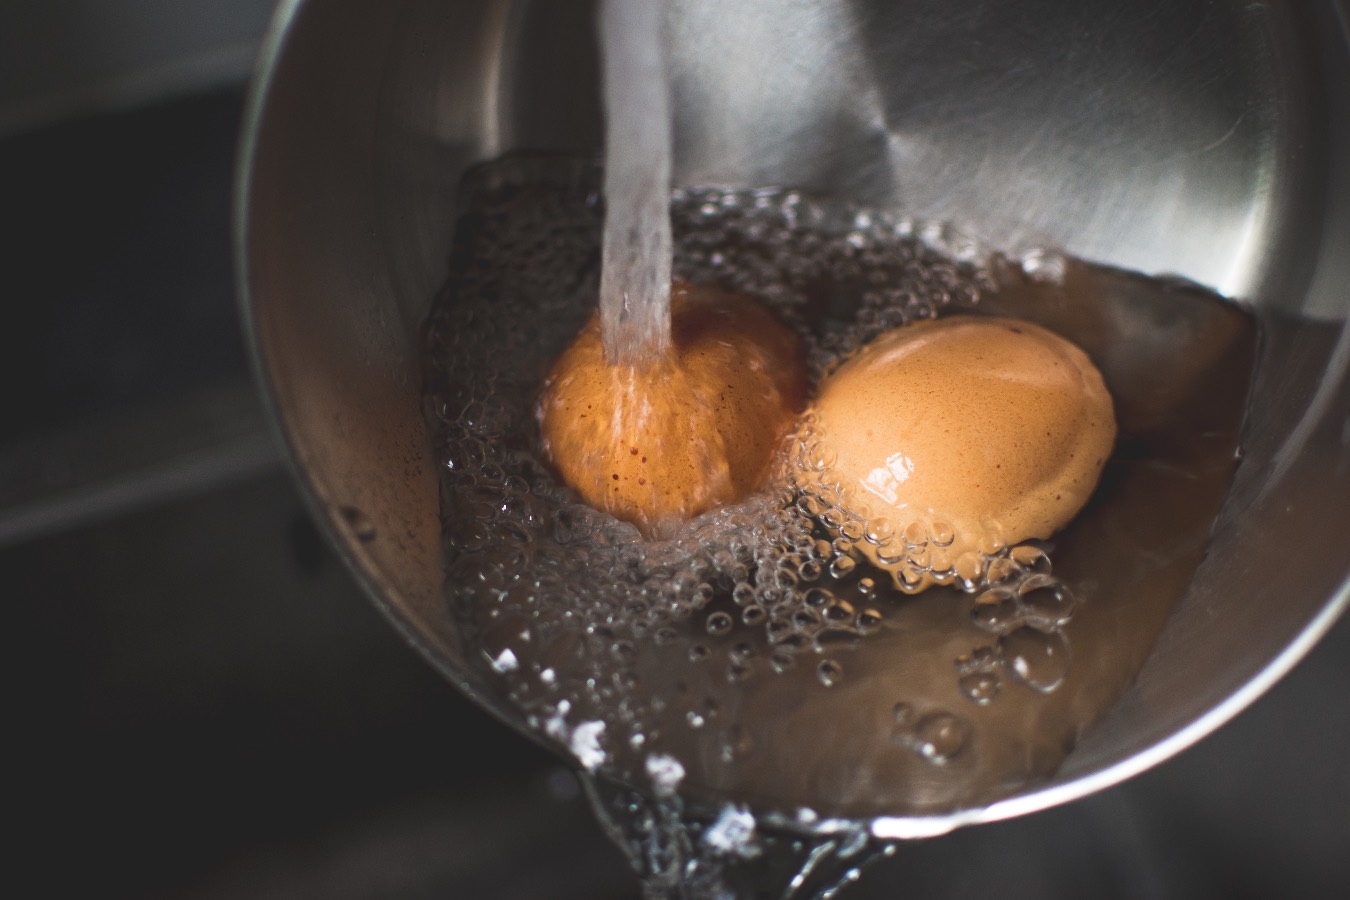 Koniec z pękaniem jajek podczas gotowania! Ten genialny trik załatwi sprawę, ułatwi też obieranie